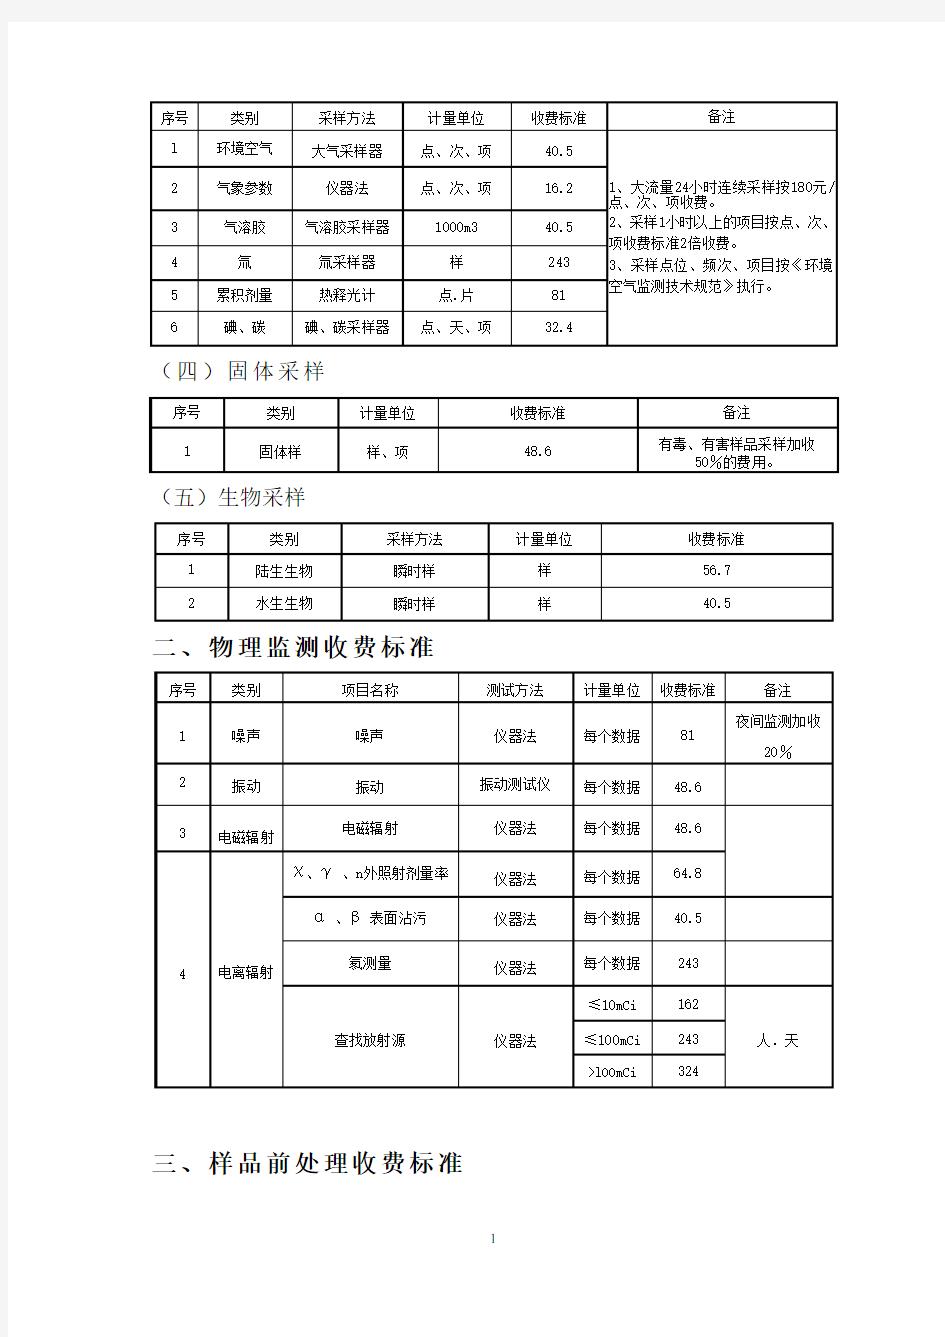 辽宁省环境监测服务收费标准辽价函[2014]160号收费标准